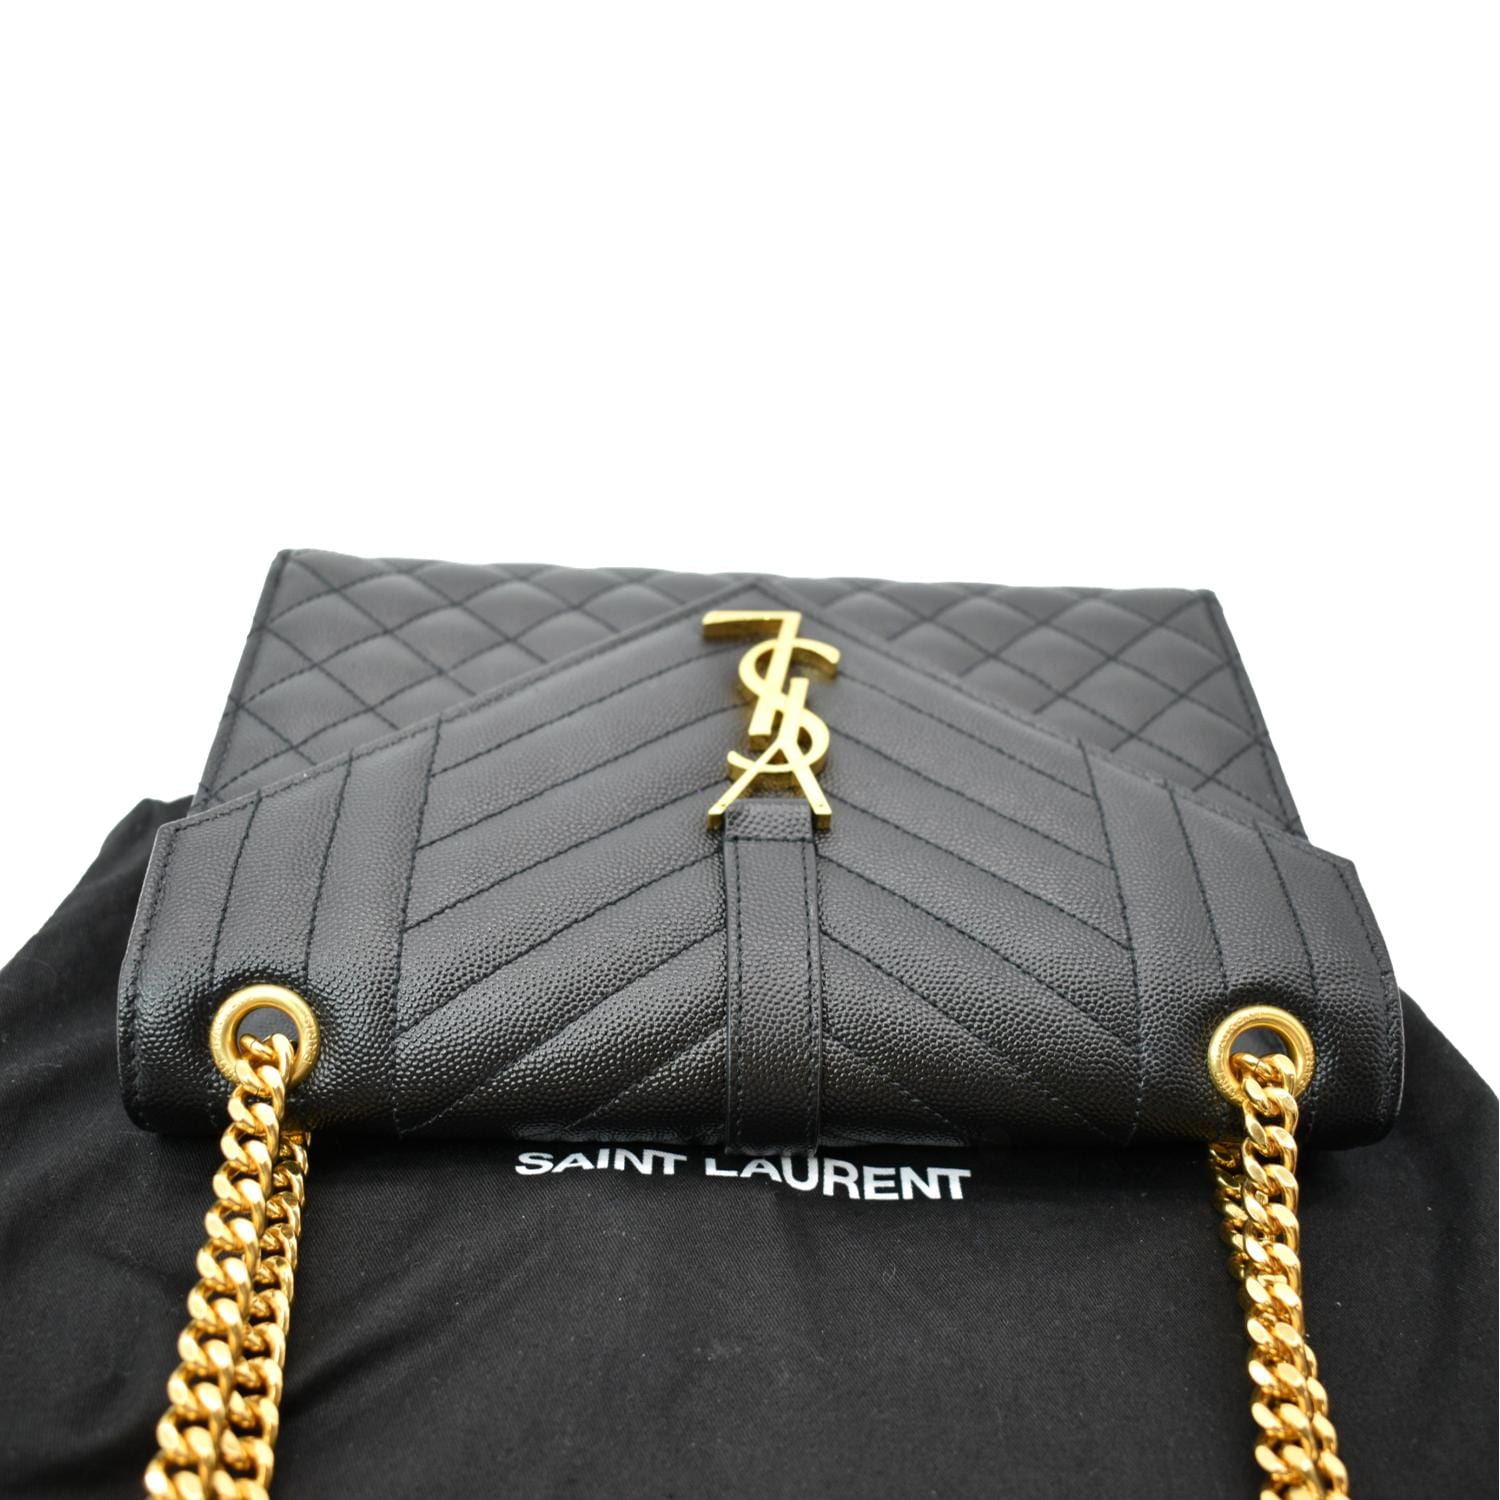 YVES SAINT LAURENT Envelope Leather Chain Shoulder Bag Black